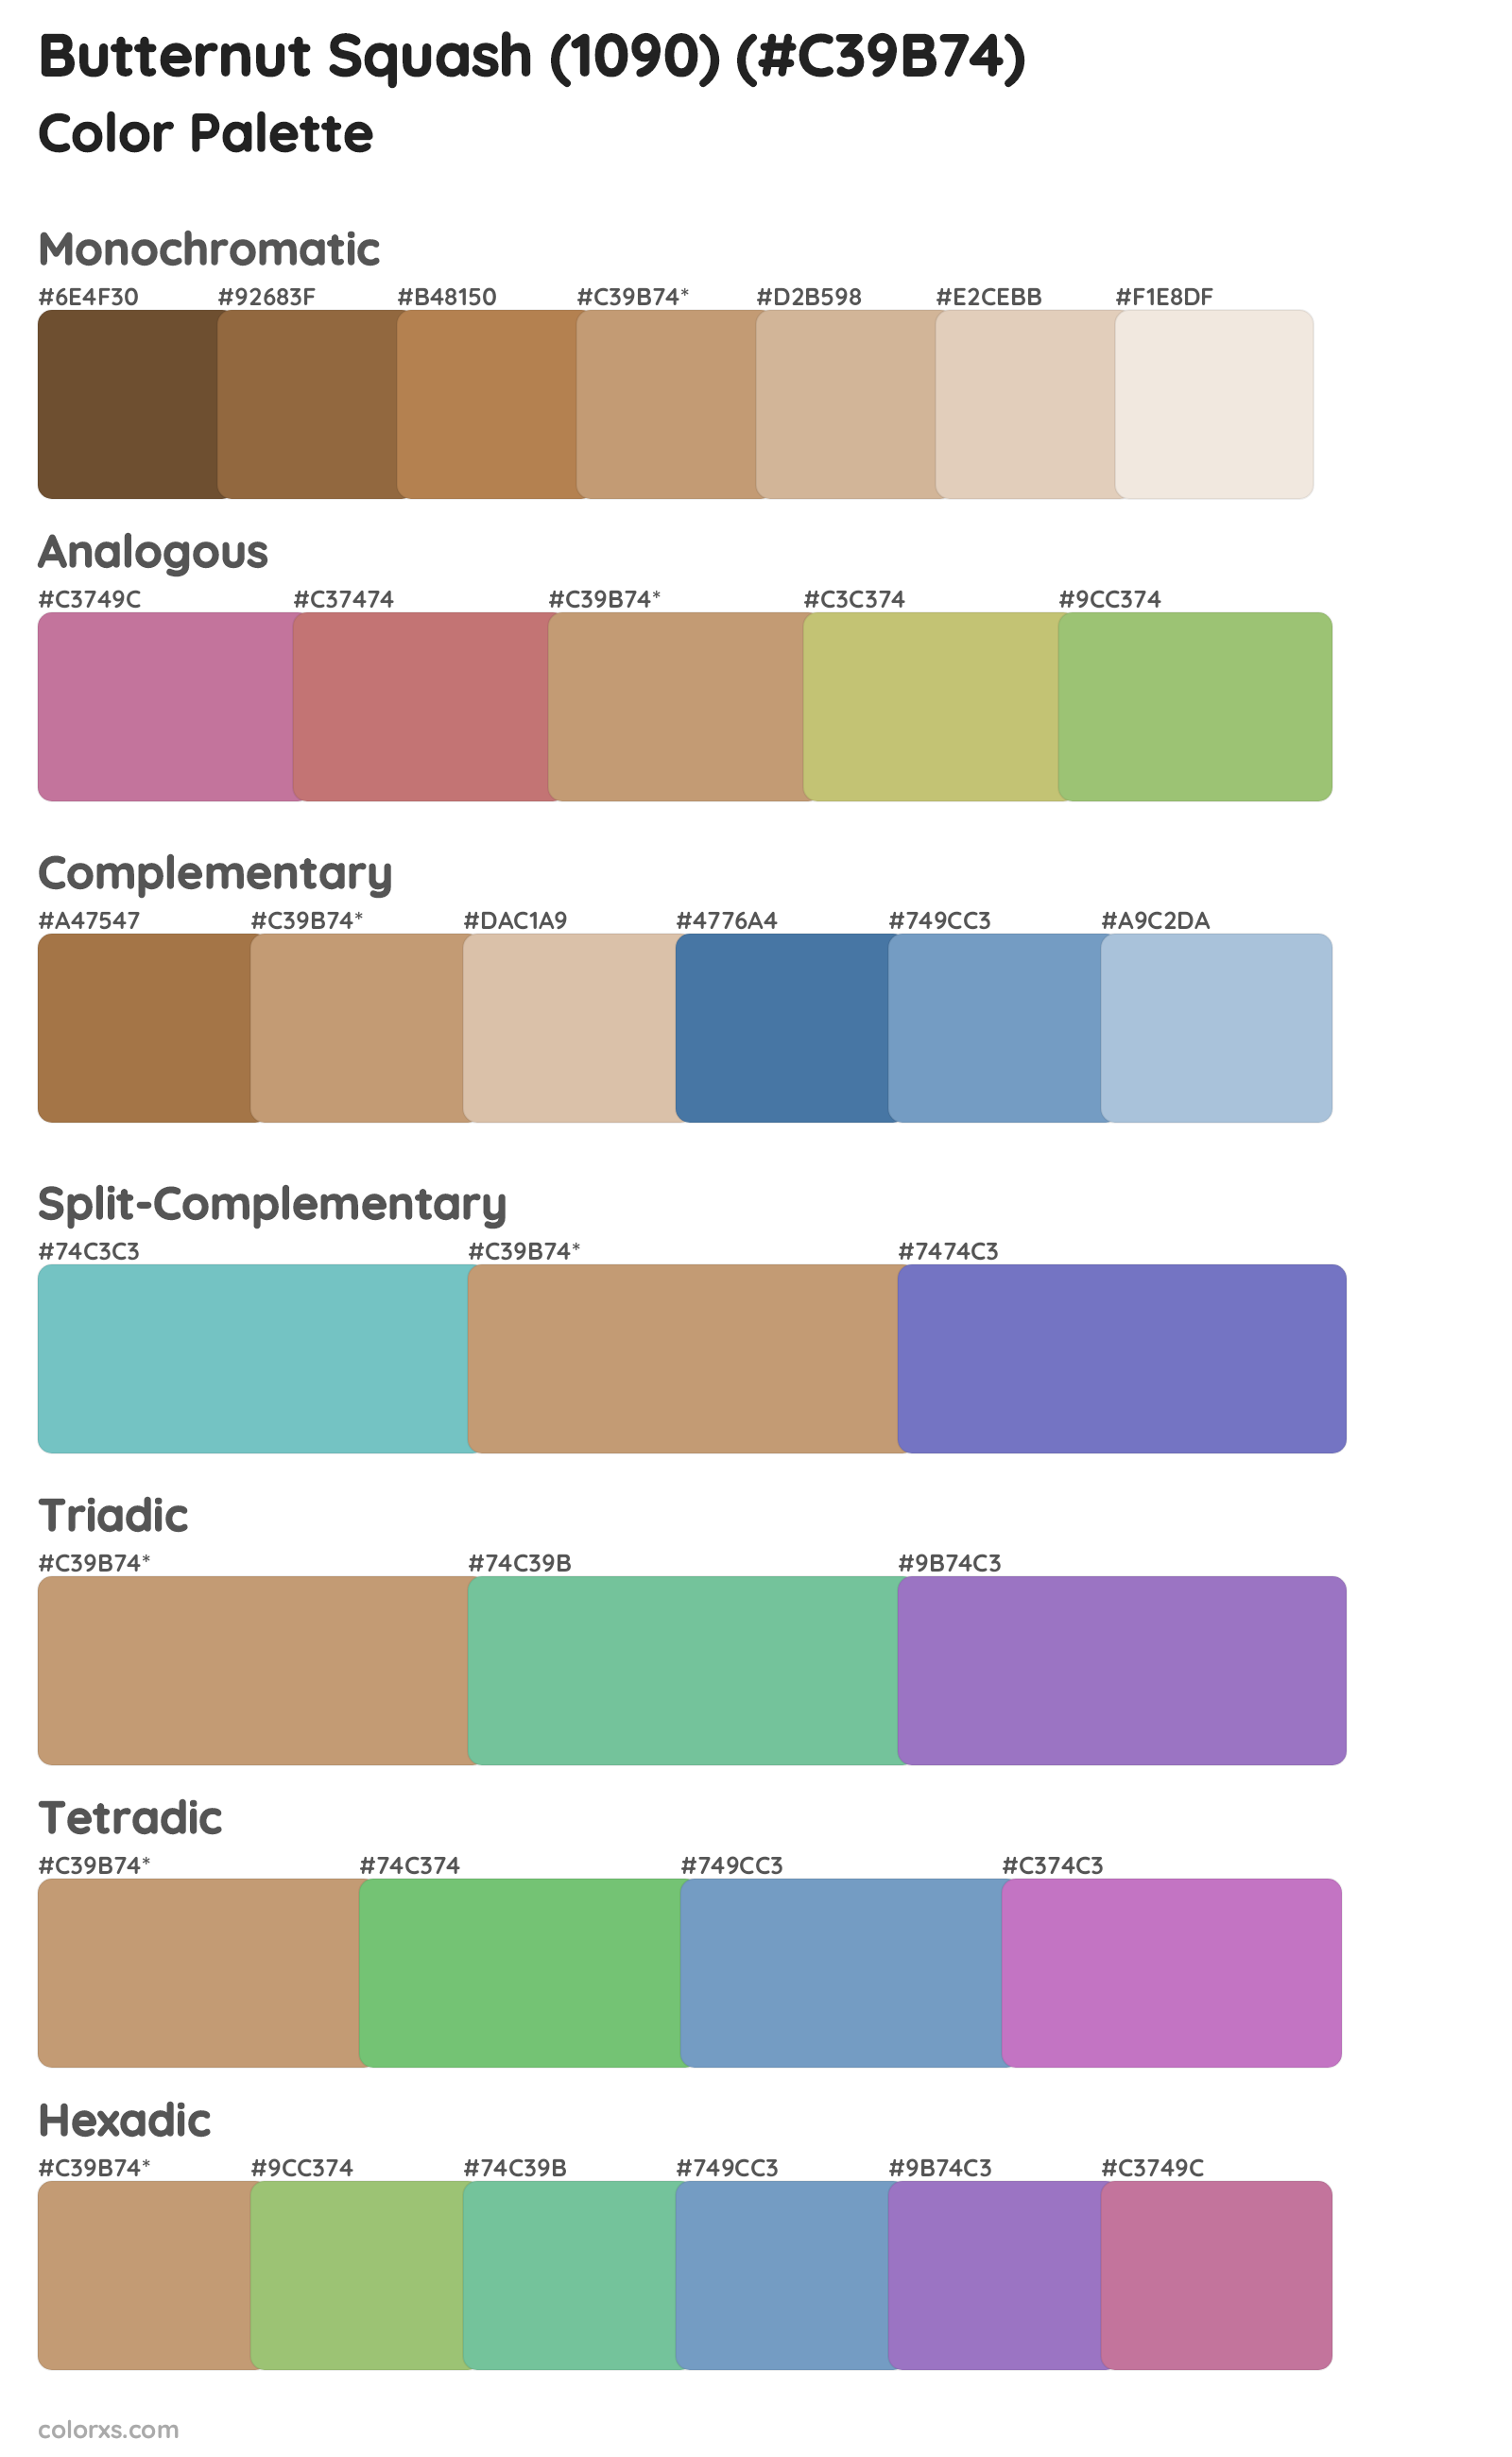 Butternut Squash (1090) Color Scheme Palettes